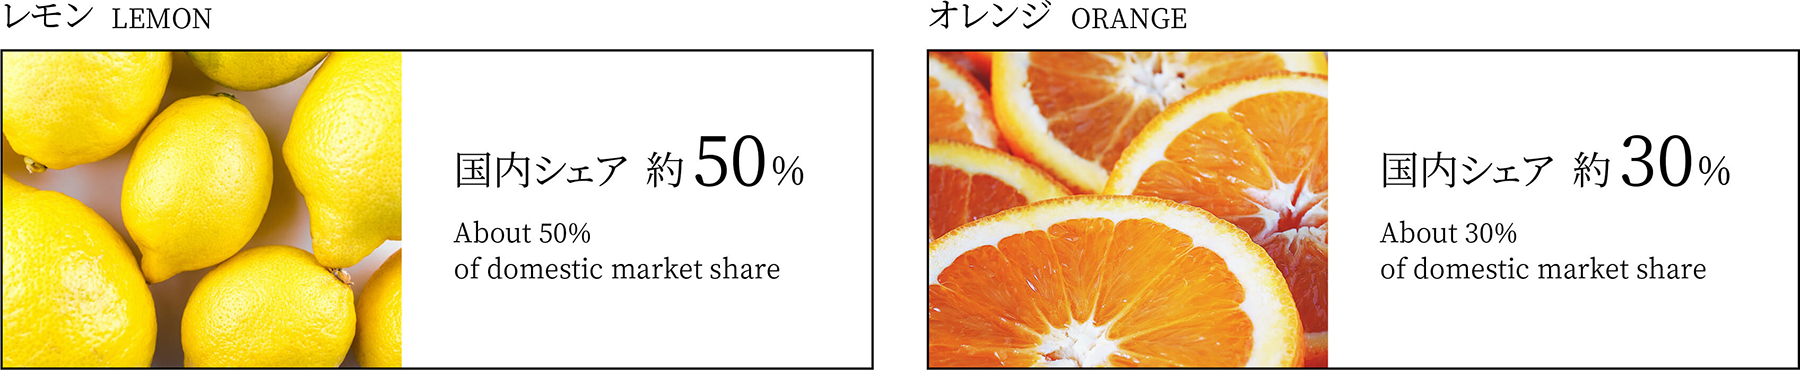 世界中からフレッシュな青果物を日本に輸入。